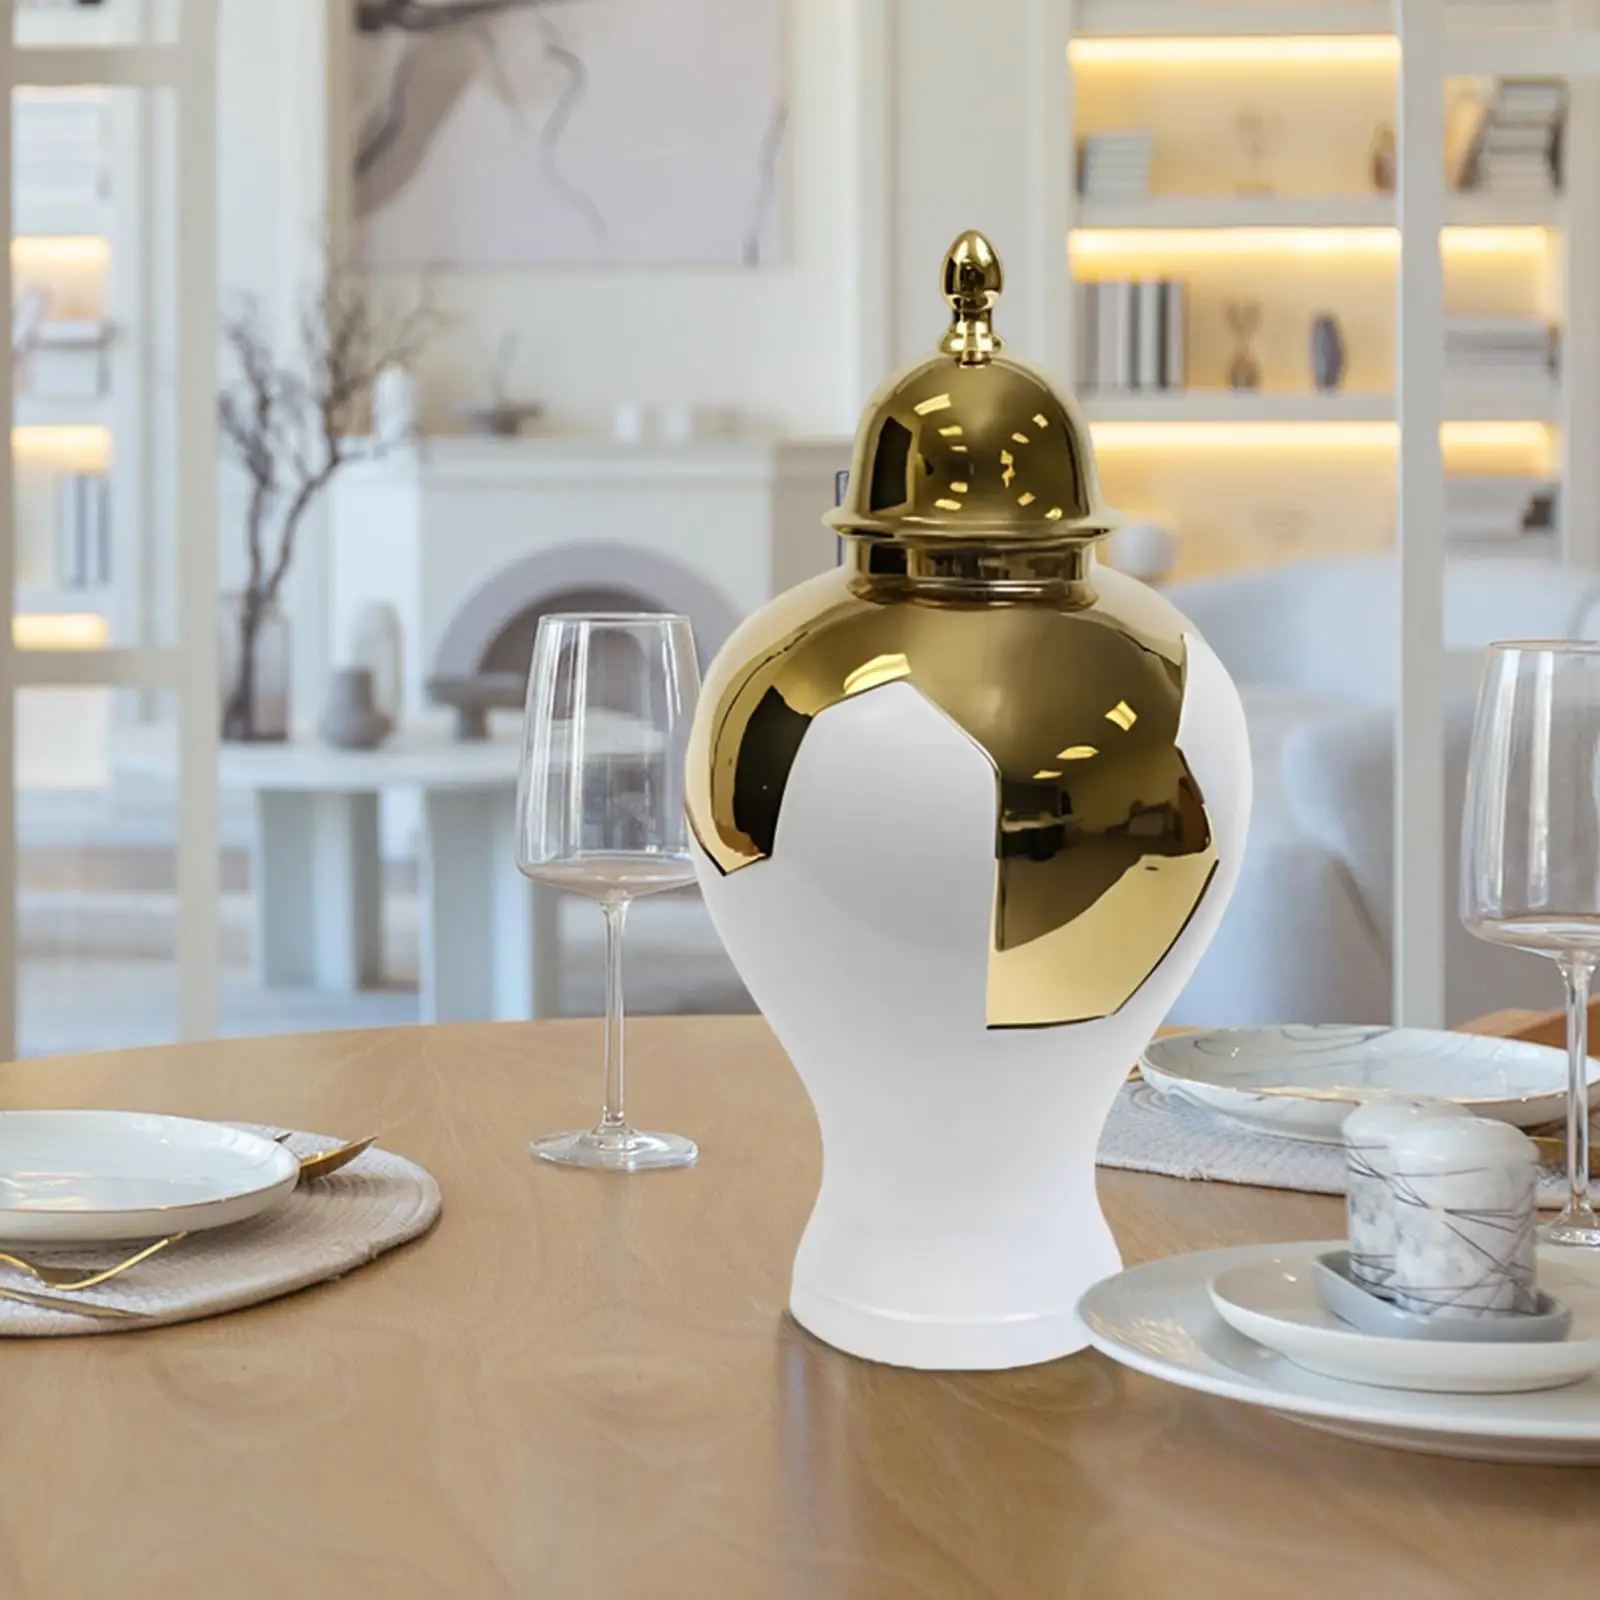 Ceramic Ginger Jar Storage Elegant Display Flower Vase Porcelain Tea Jar for Home Table Centerpieces Living Room Party Bedroom